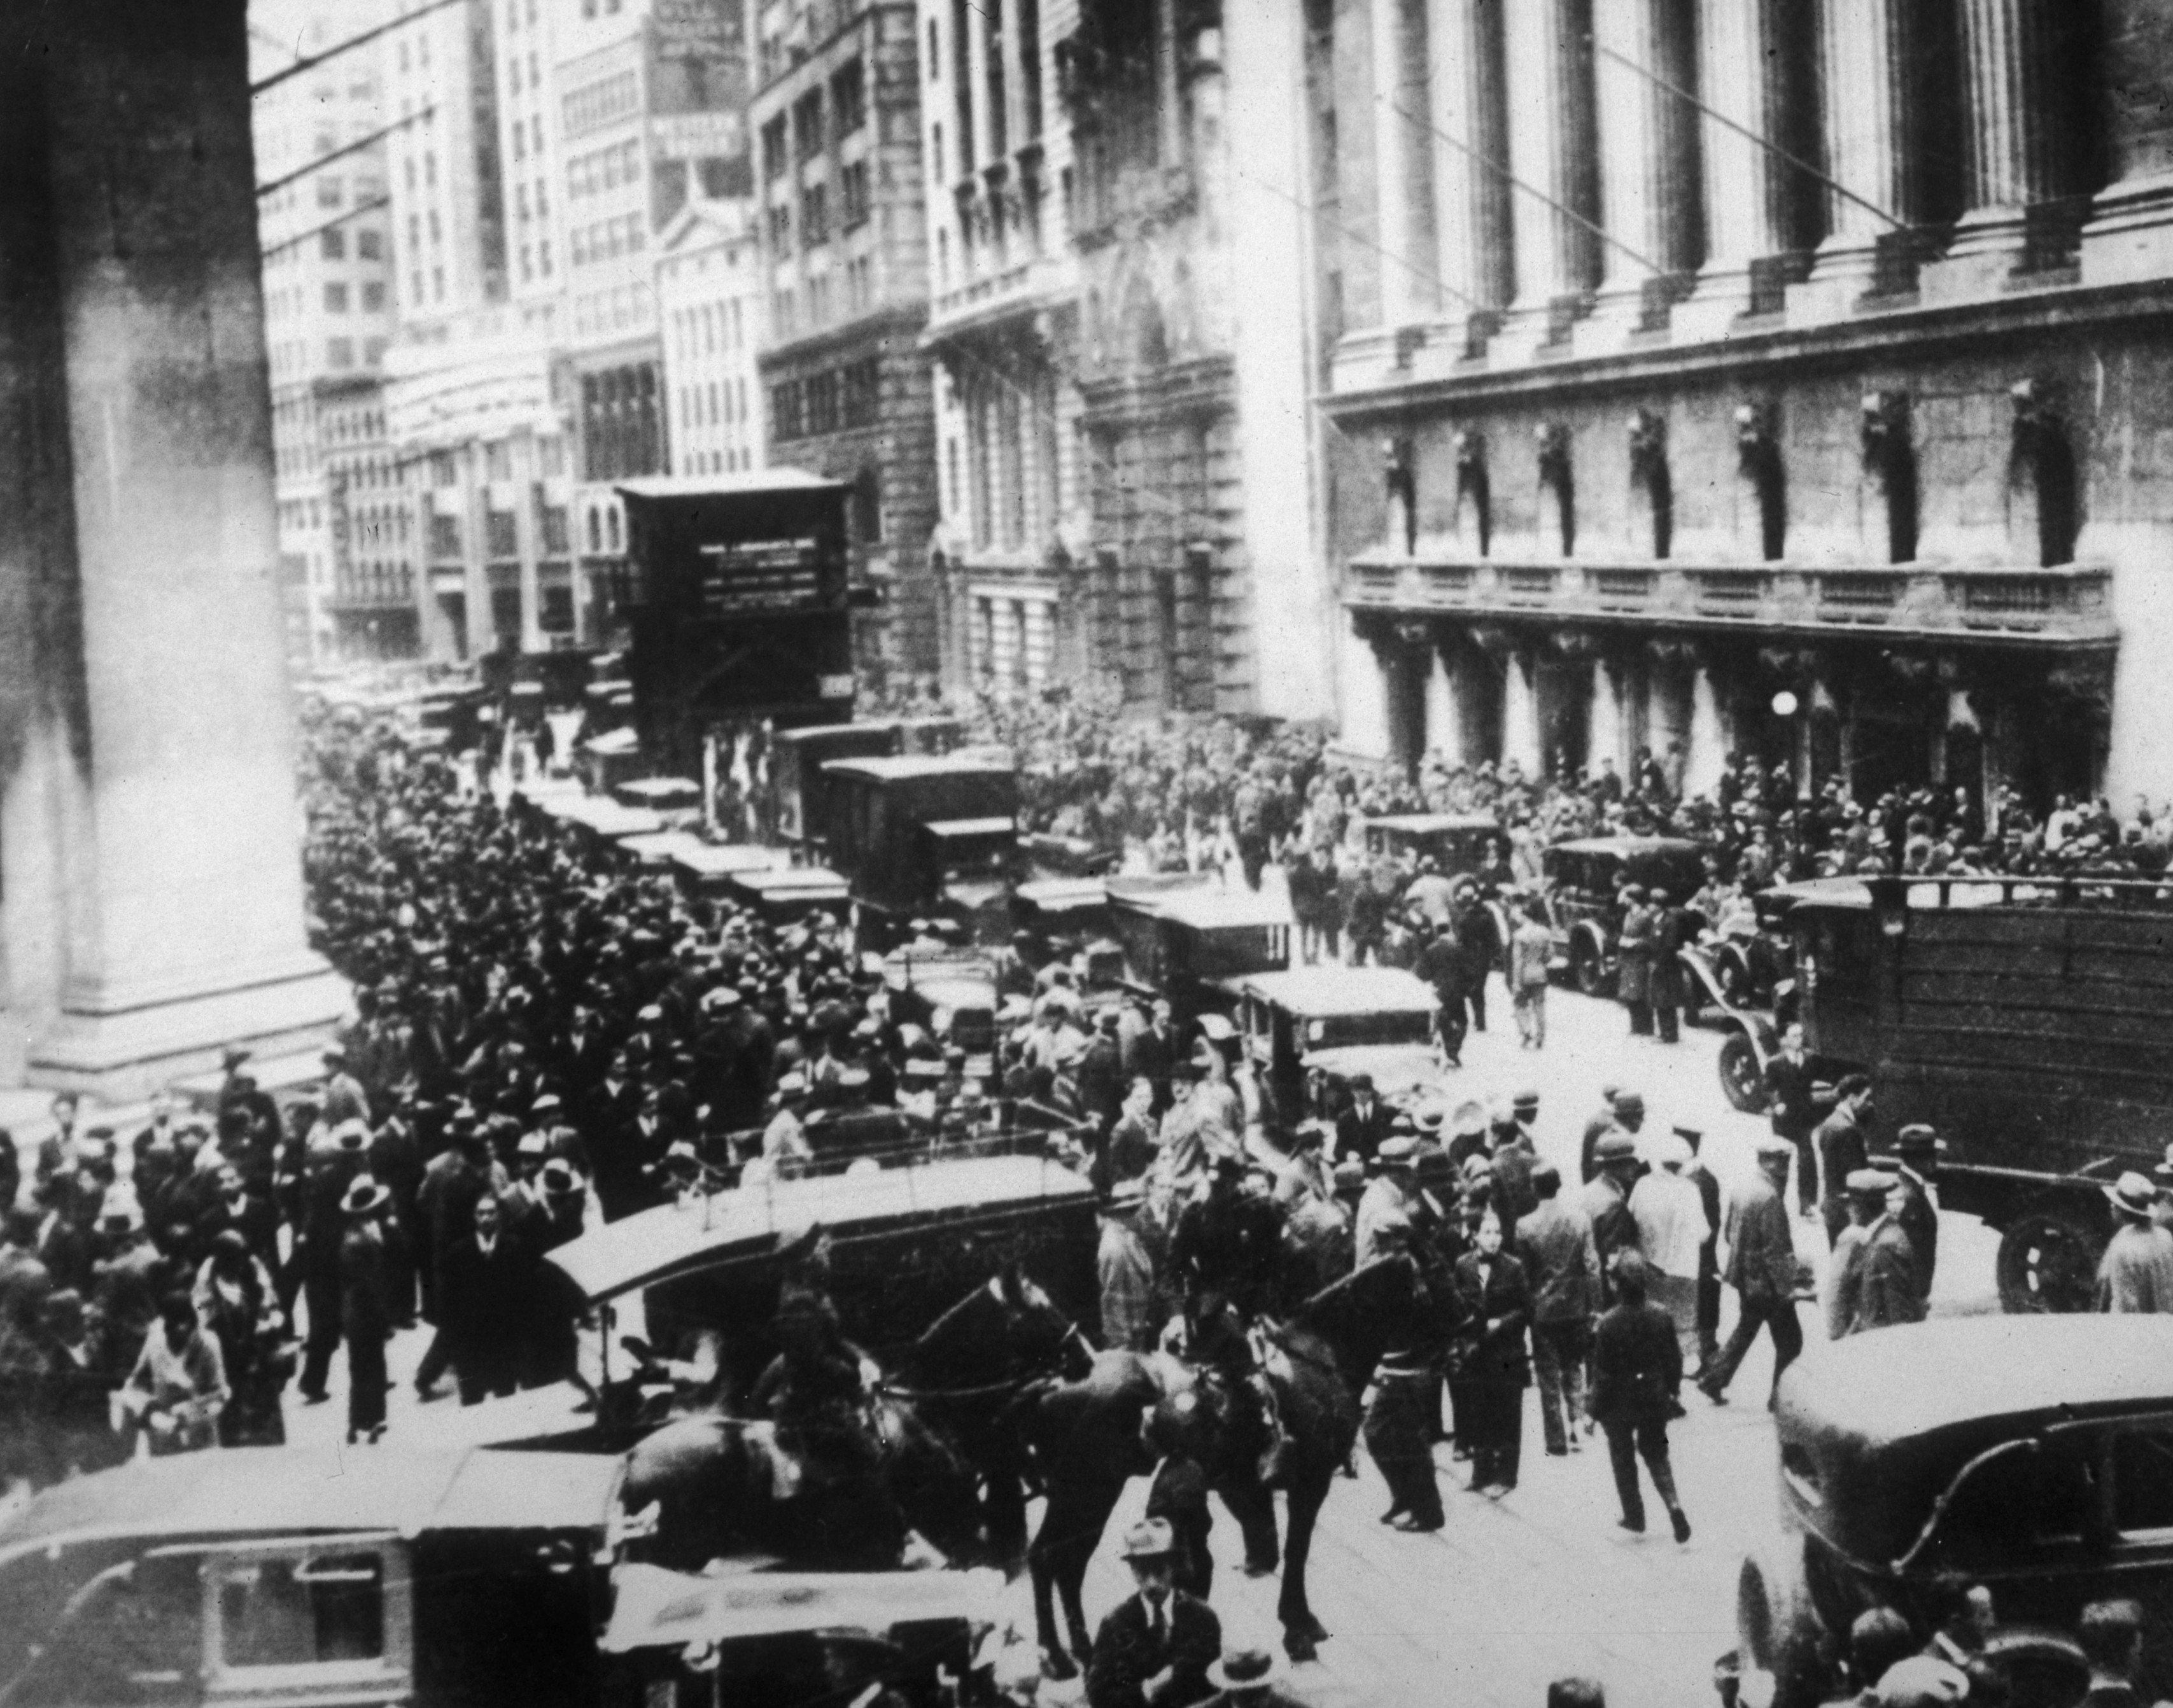 1929 stock market crashes